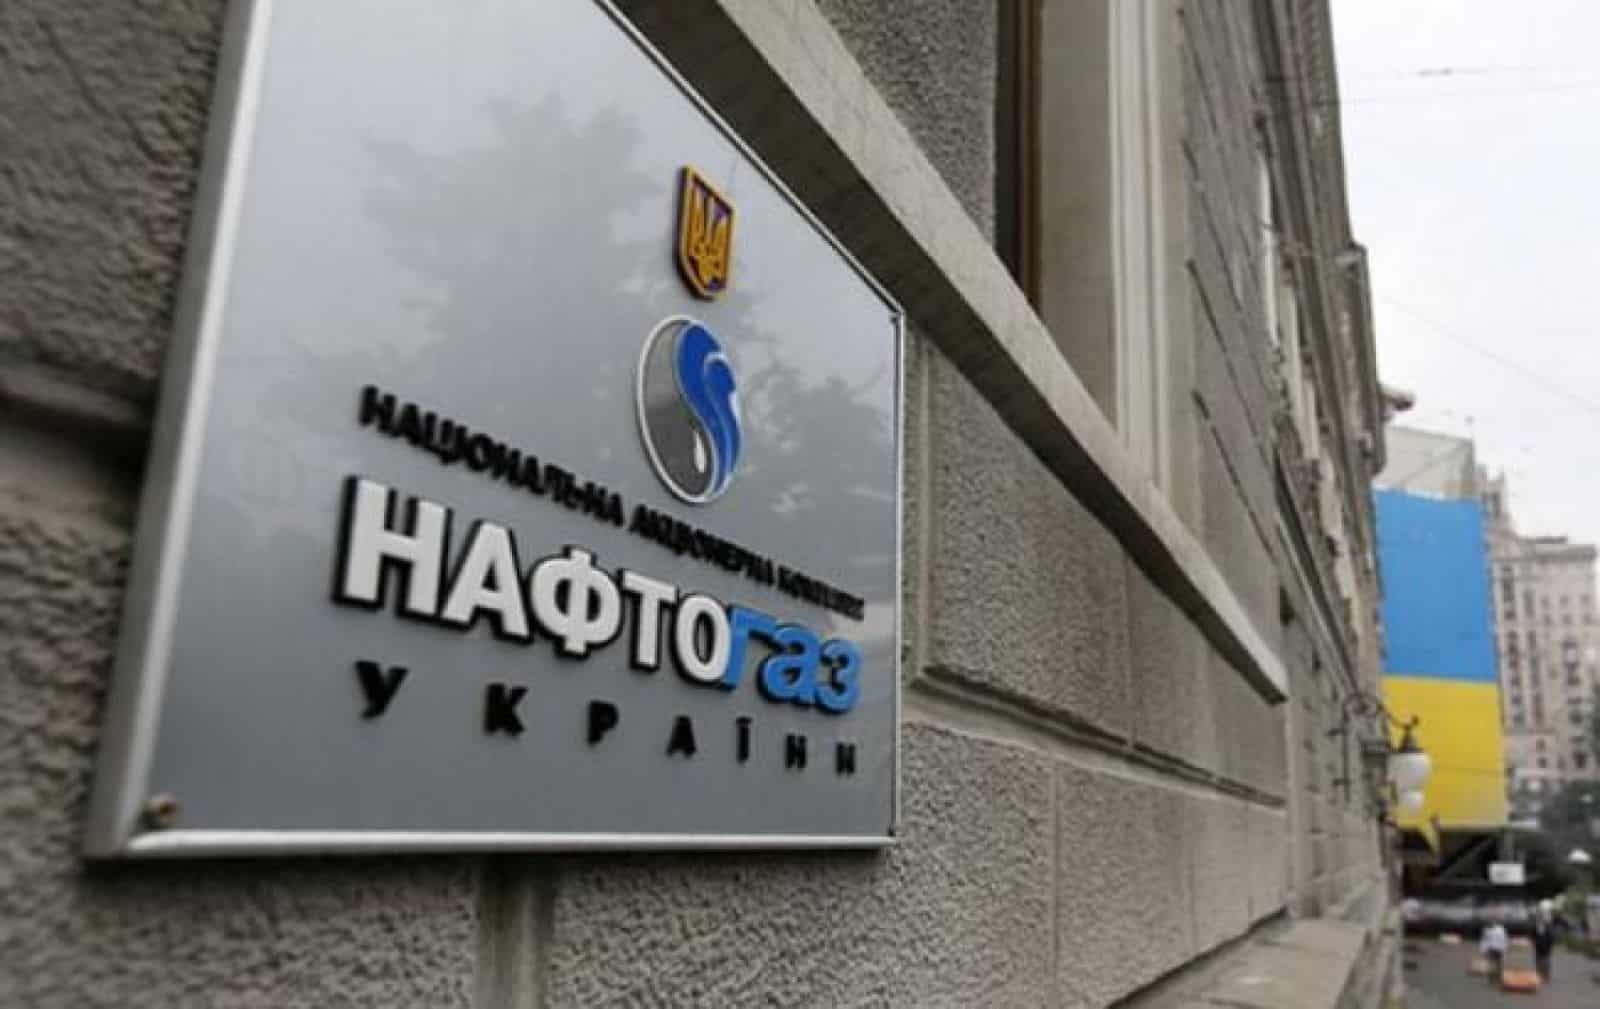  Витренко больше не работает в компании “Навфтогаз“: что стоит за увольнением топ-менеджера